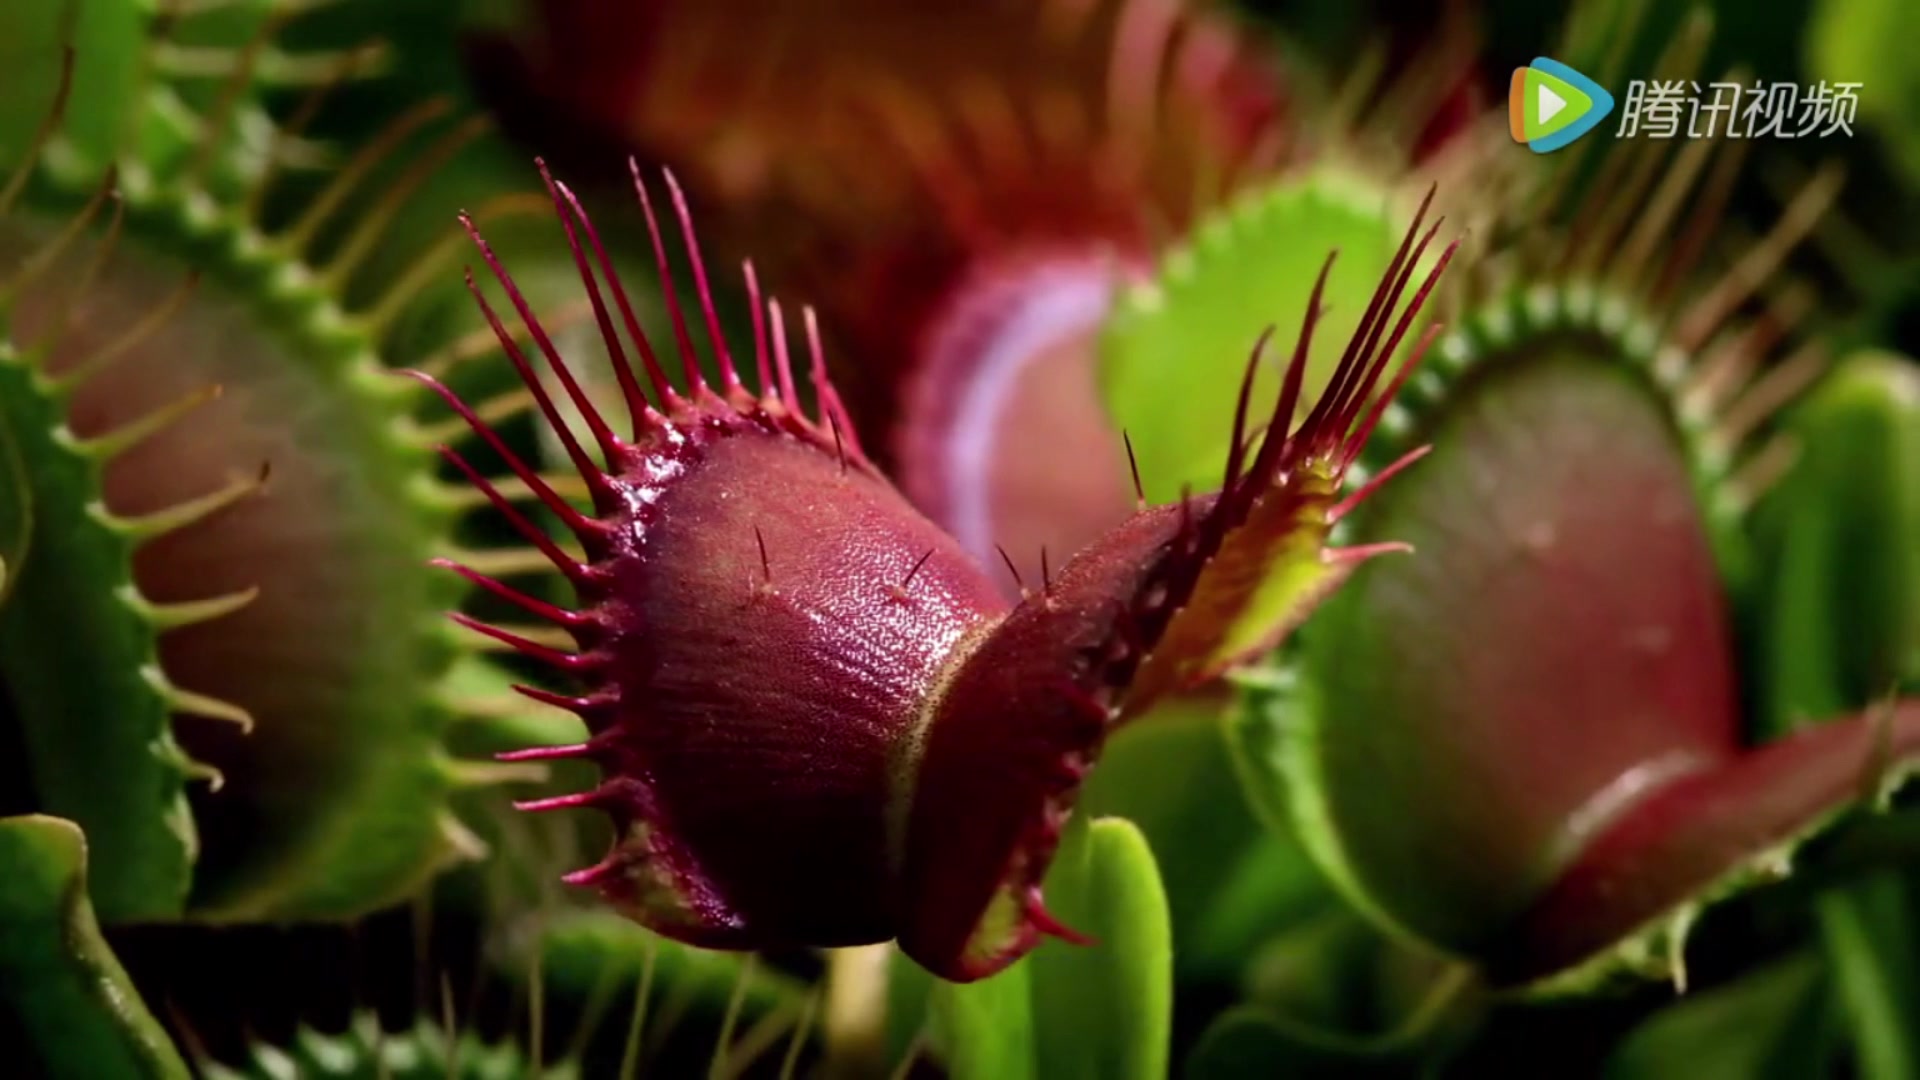 来自bbc的食虫植物纪录片真的不来看看